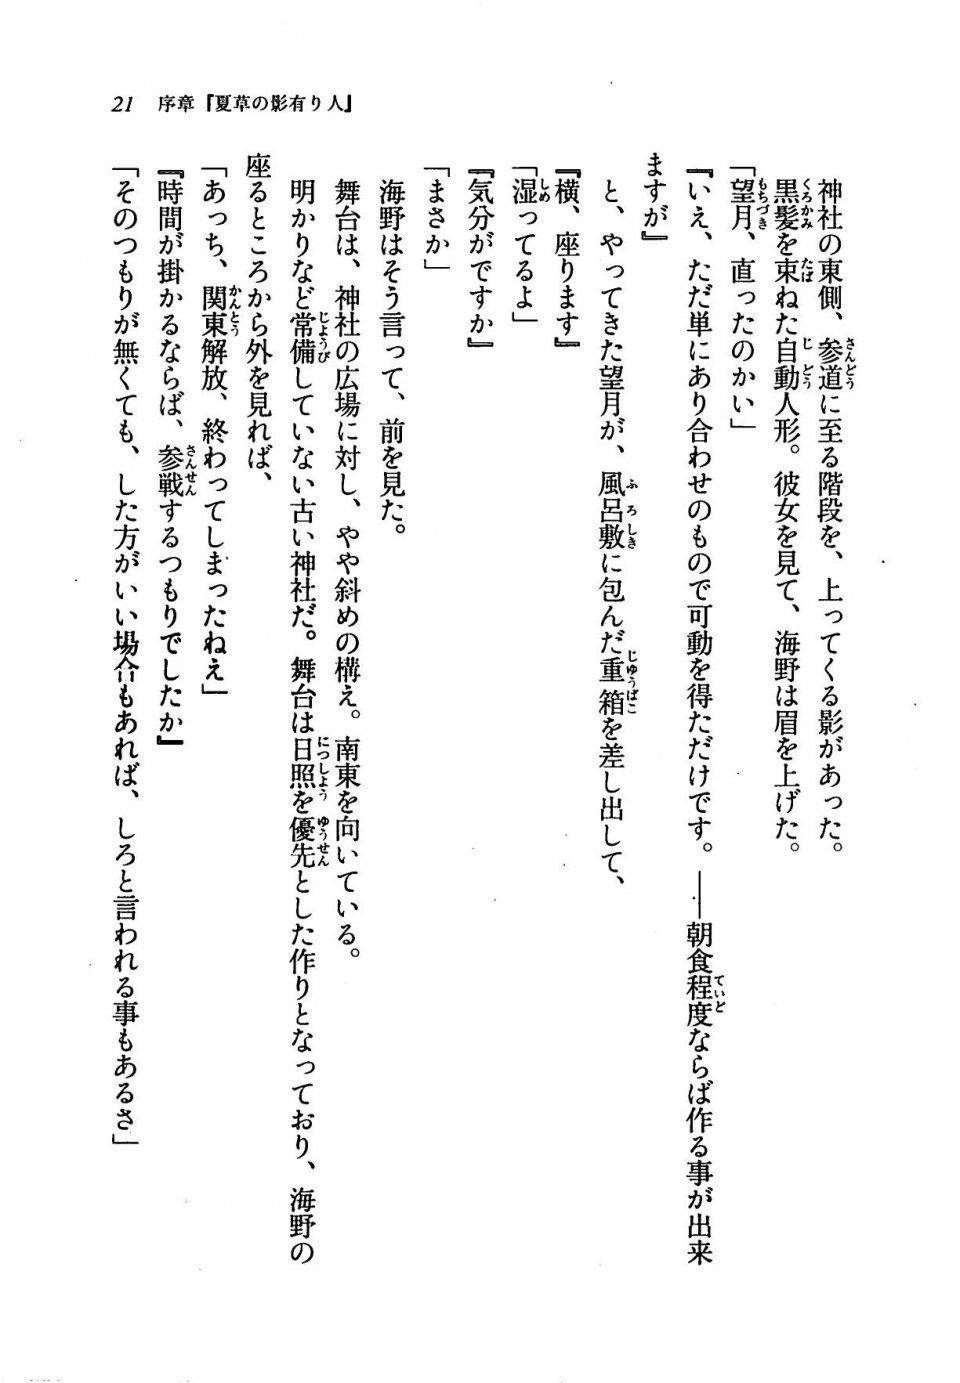 Kyoukai Senjou no Horizon LN Vol 19(8A) - Photo #21